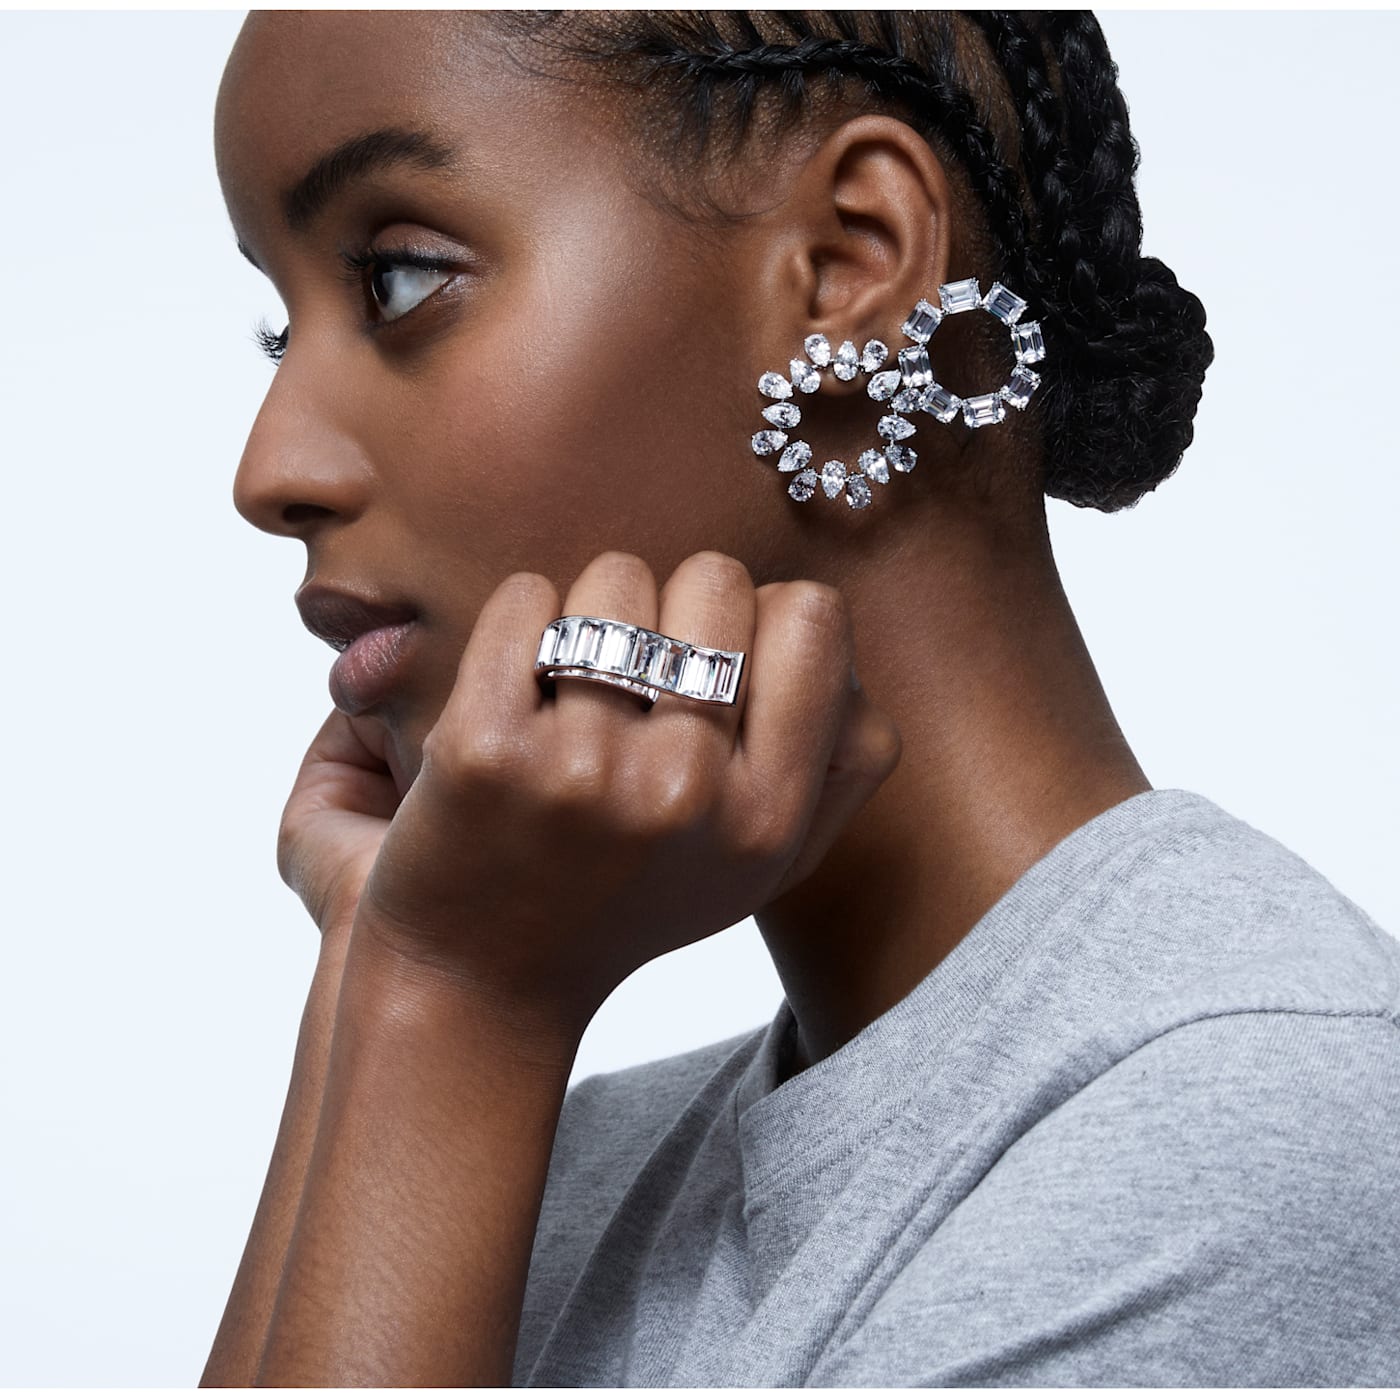 Millenia earrings